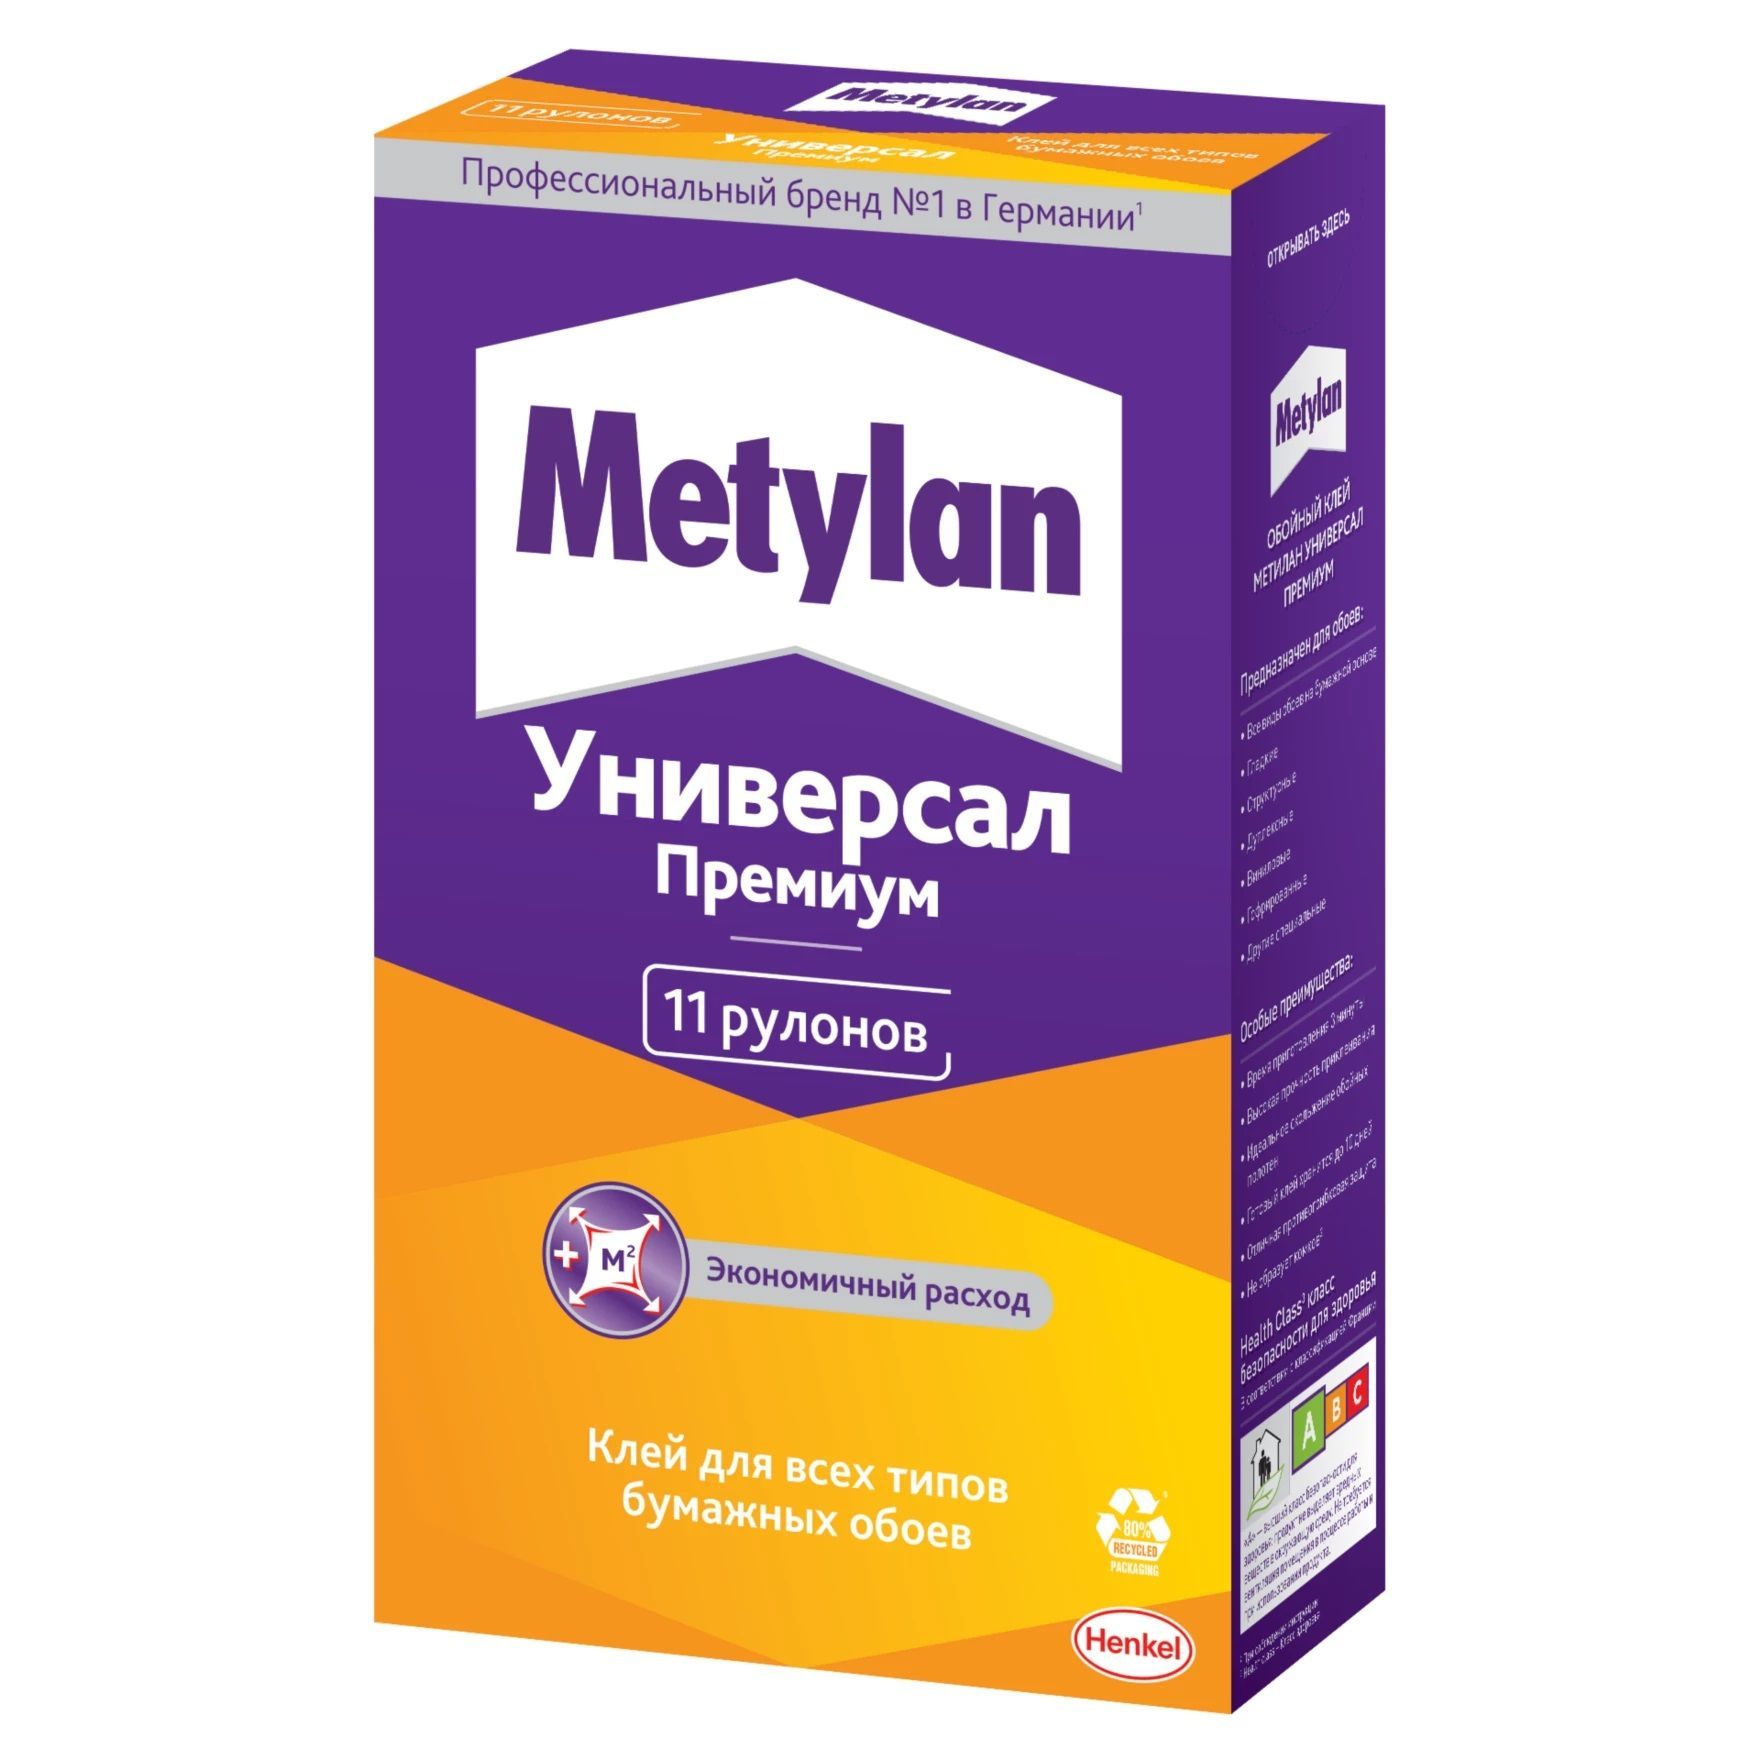 Metylan клей для обоев. Metylan флизелин ультра премиум 0.25 кг. Обойный клей Метилан. Клей Metylan флизелин ультра премиум 250г. Метилан универсал премиум, 100г.